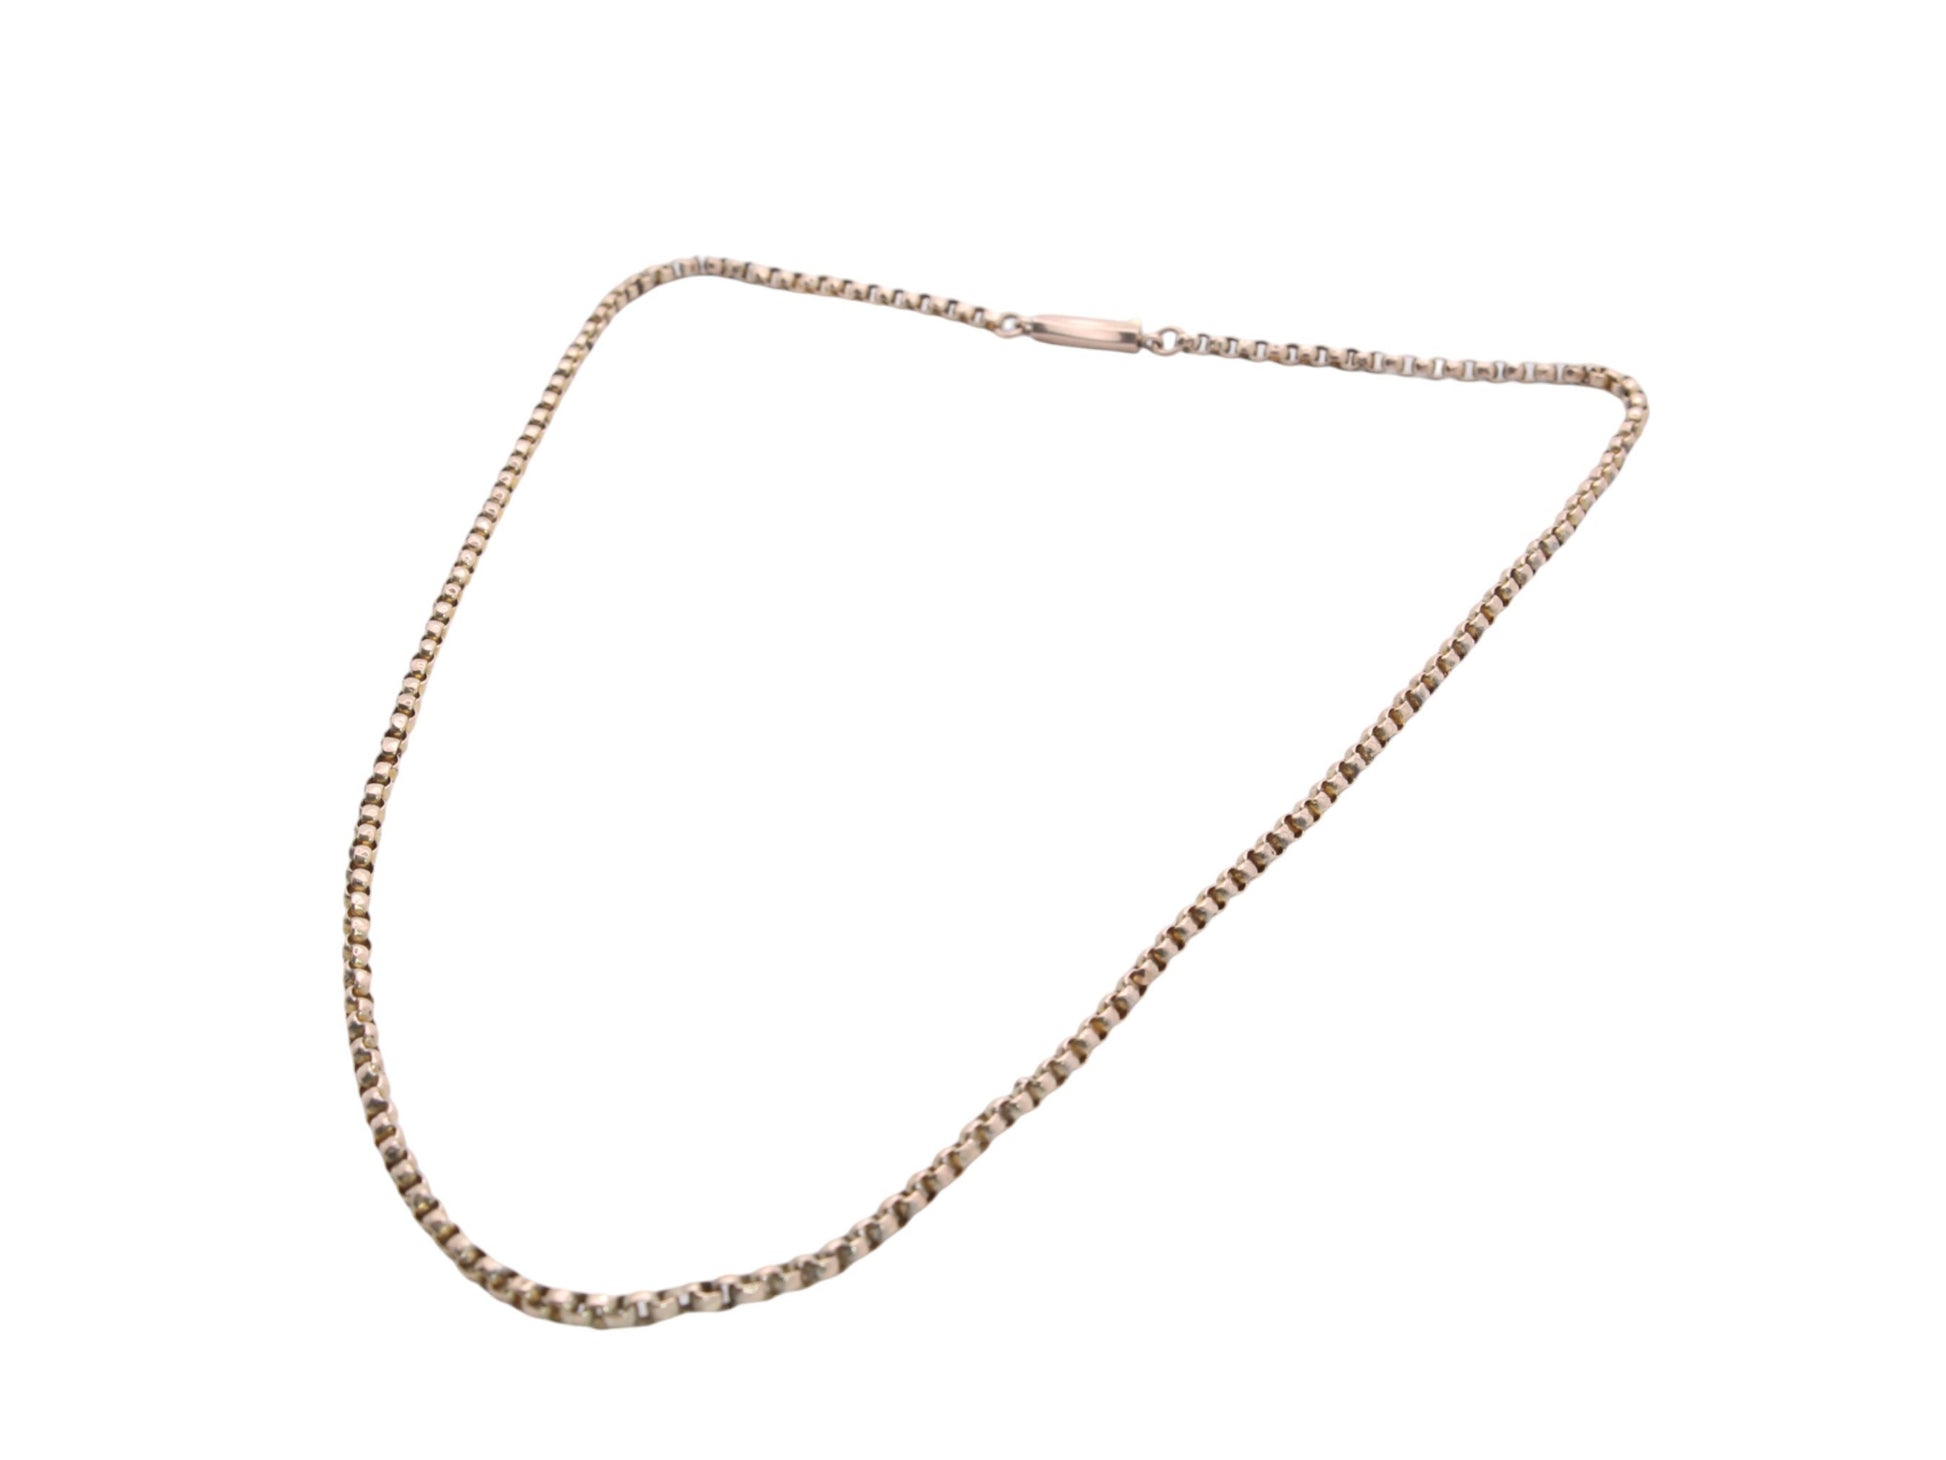 Antique-9ct-Gold-Belcher-Link-Necklace